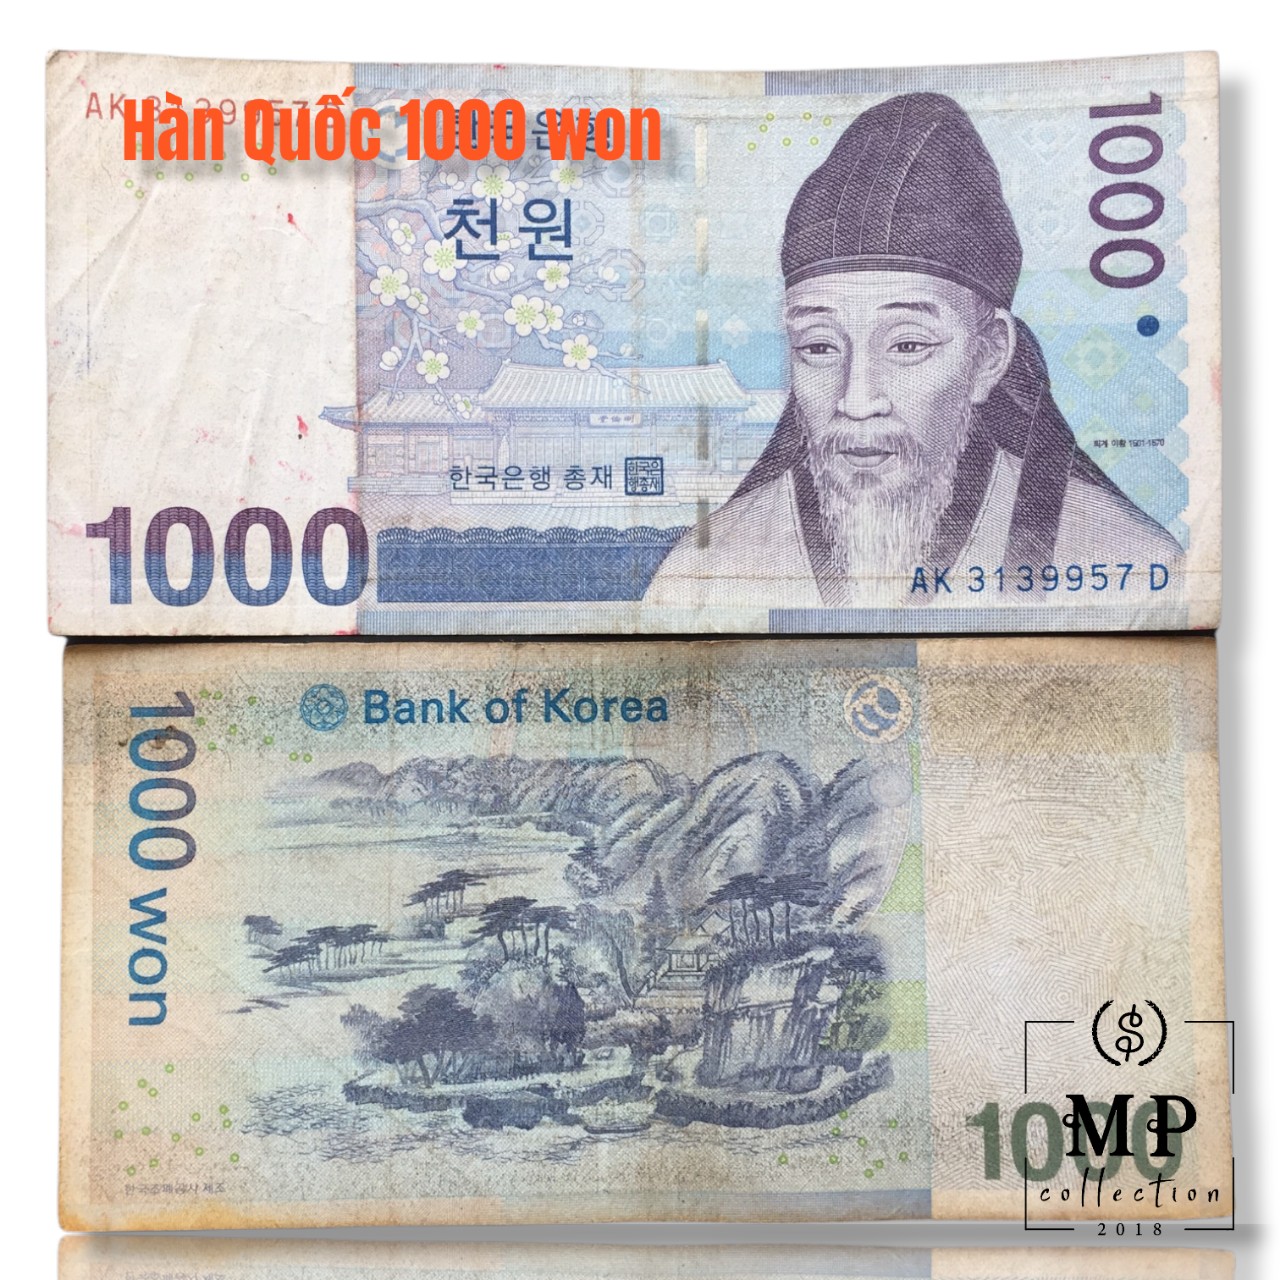 Tờ tiền Hàn Quốc mệnh giá 1000 won cũ - Tặng túi nilon bảo quản